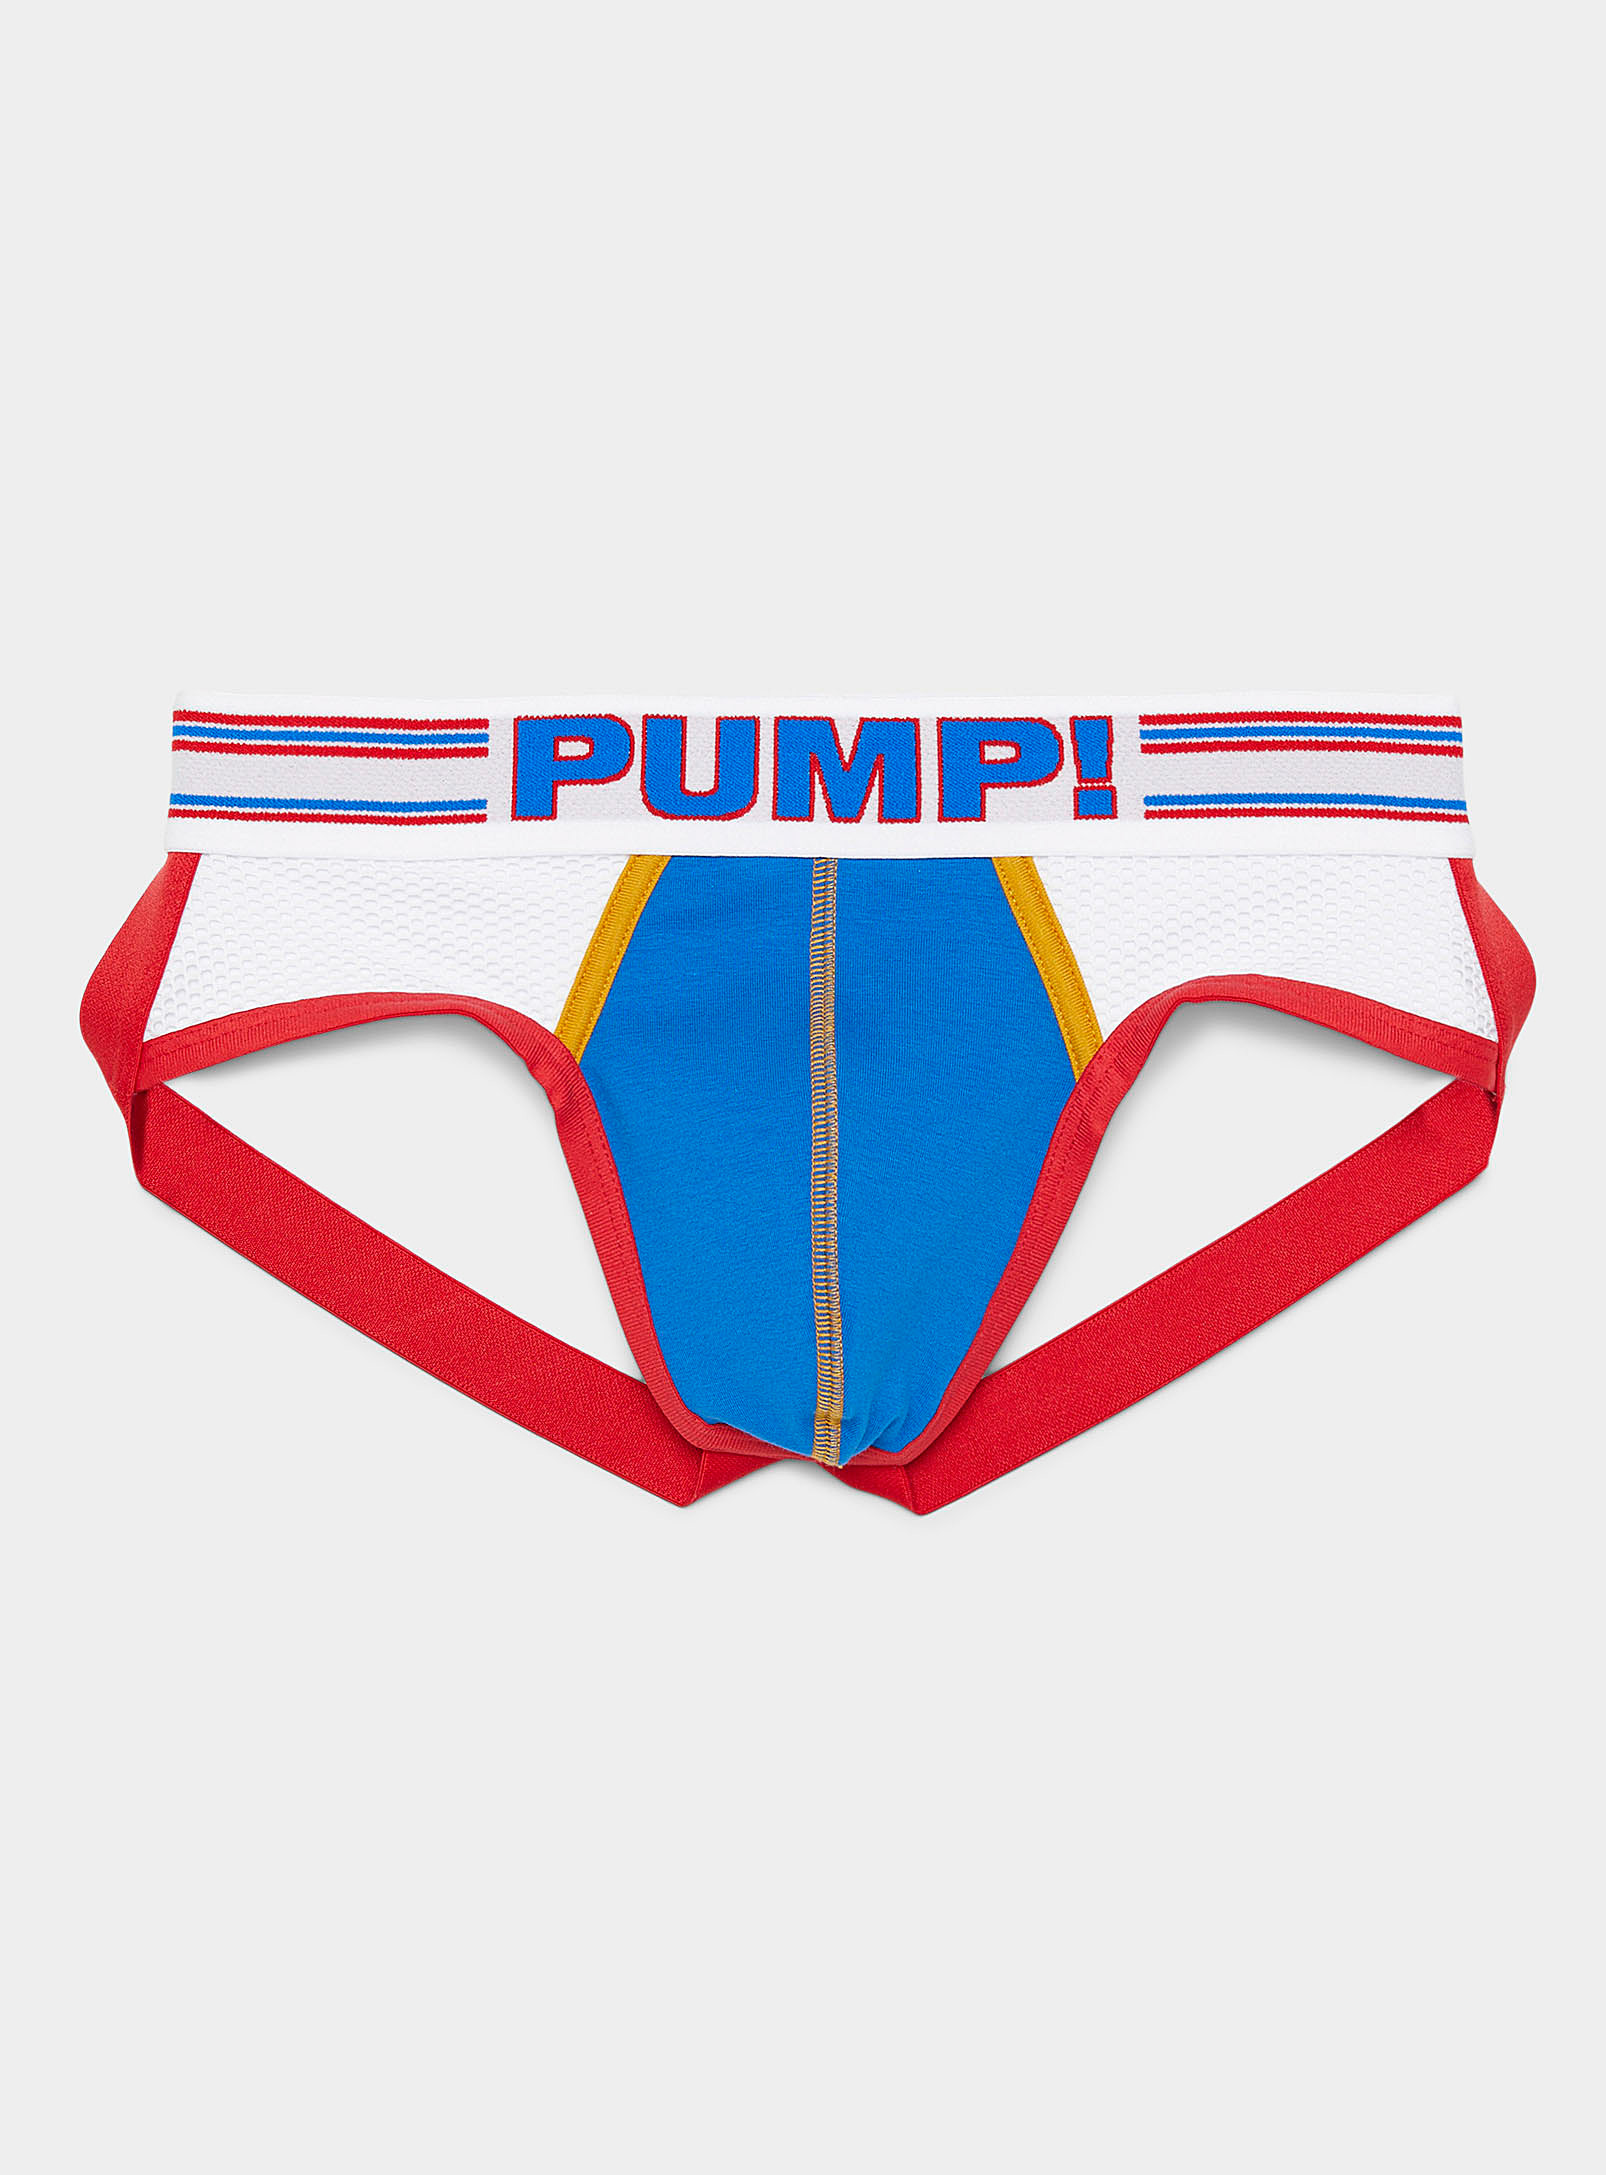 Pump! - Men's Velocity jockstrap